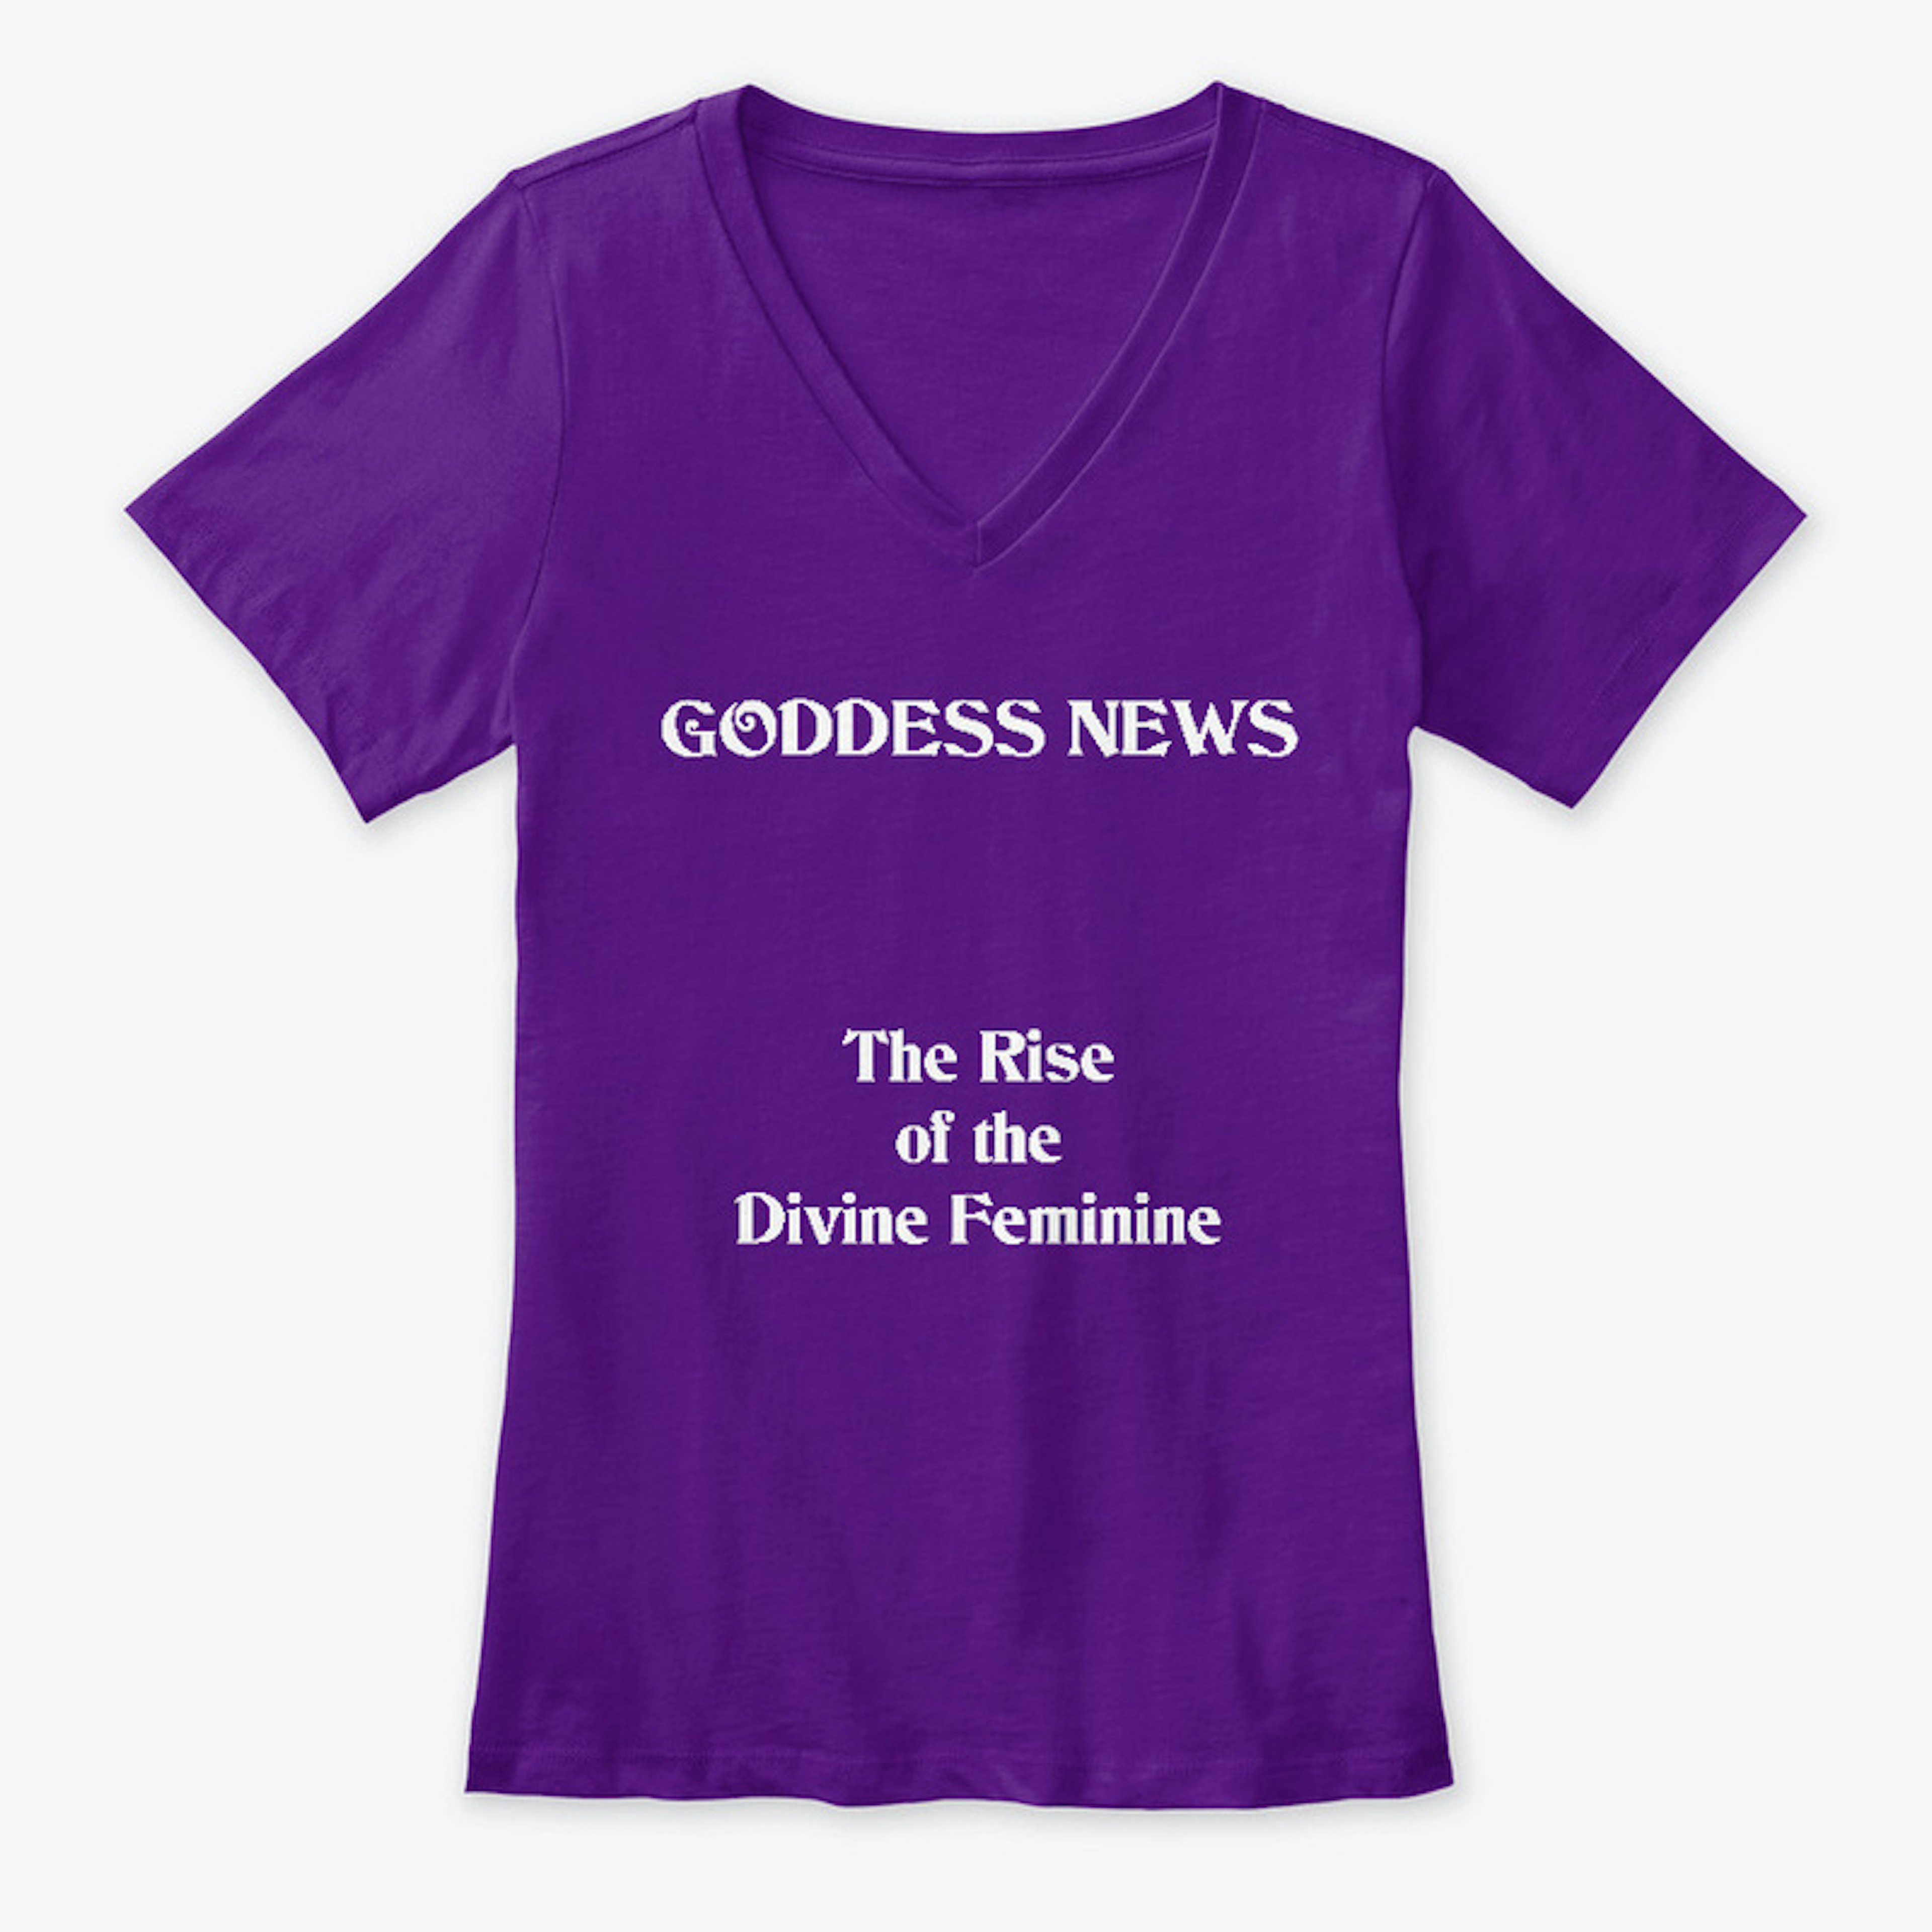 The Rise of the Divine Feminine